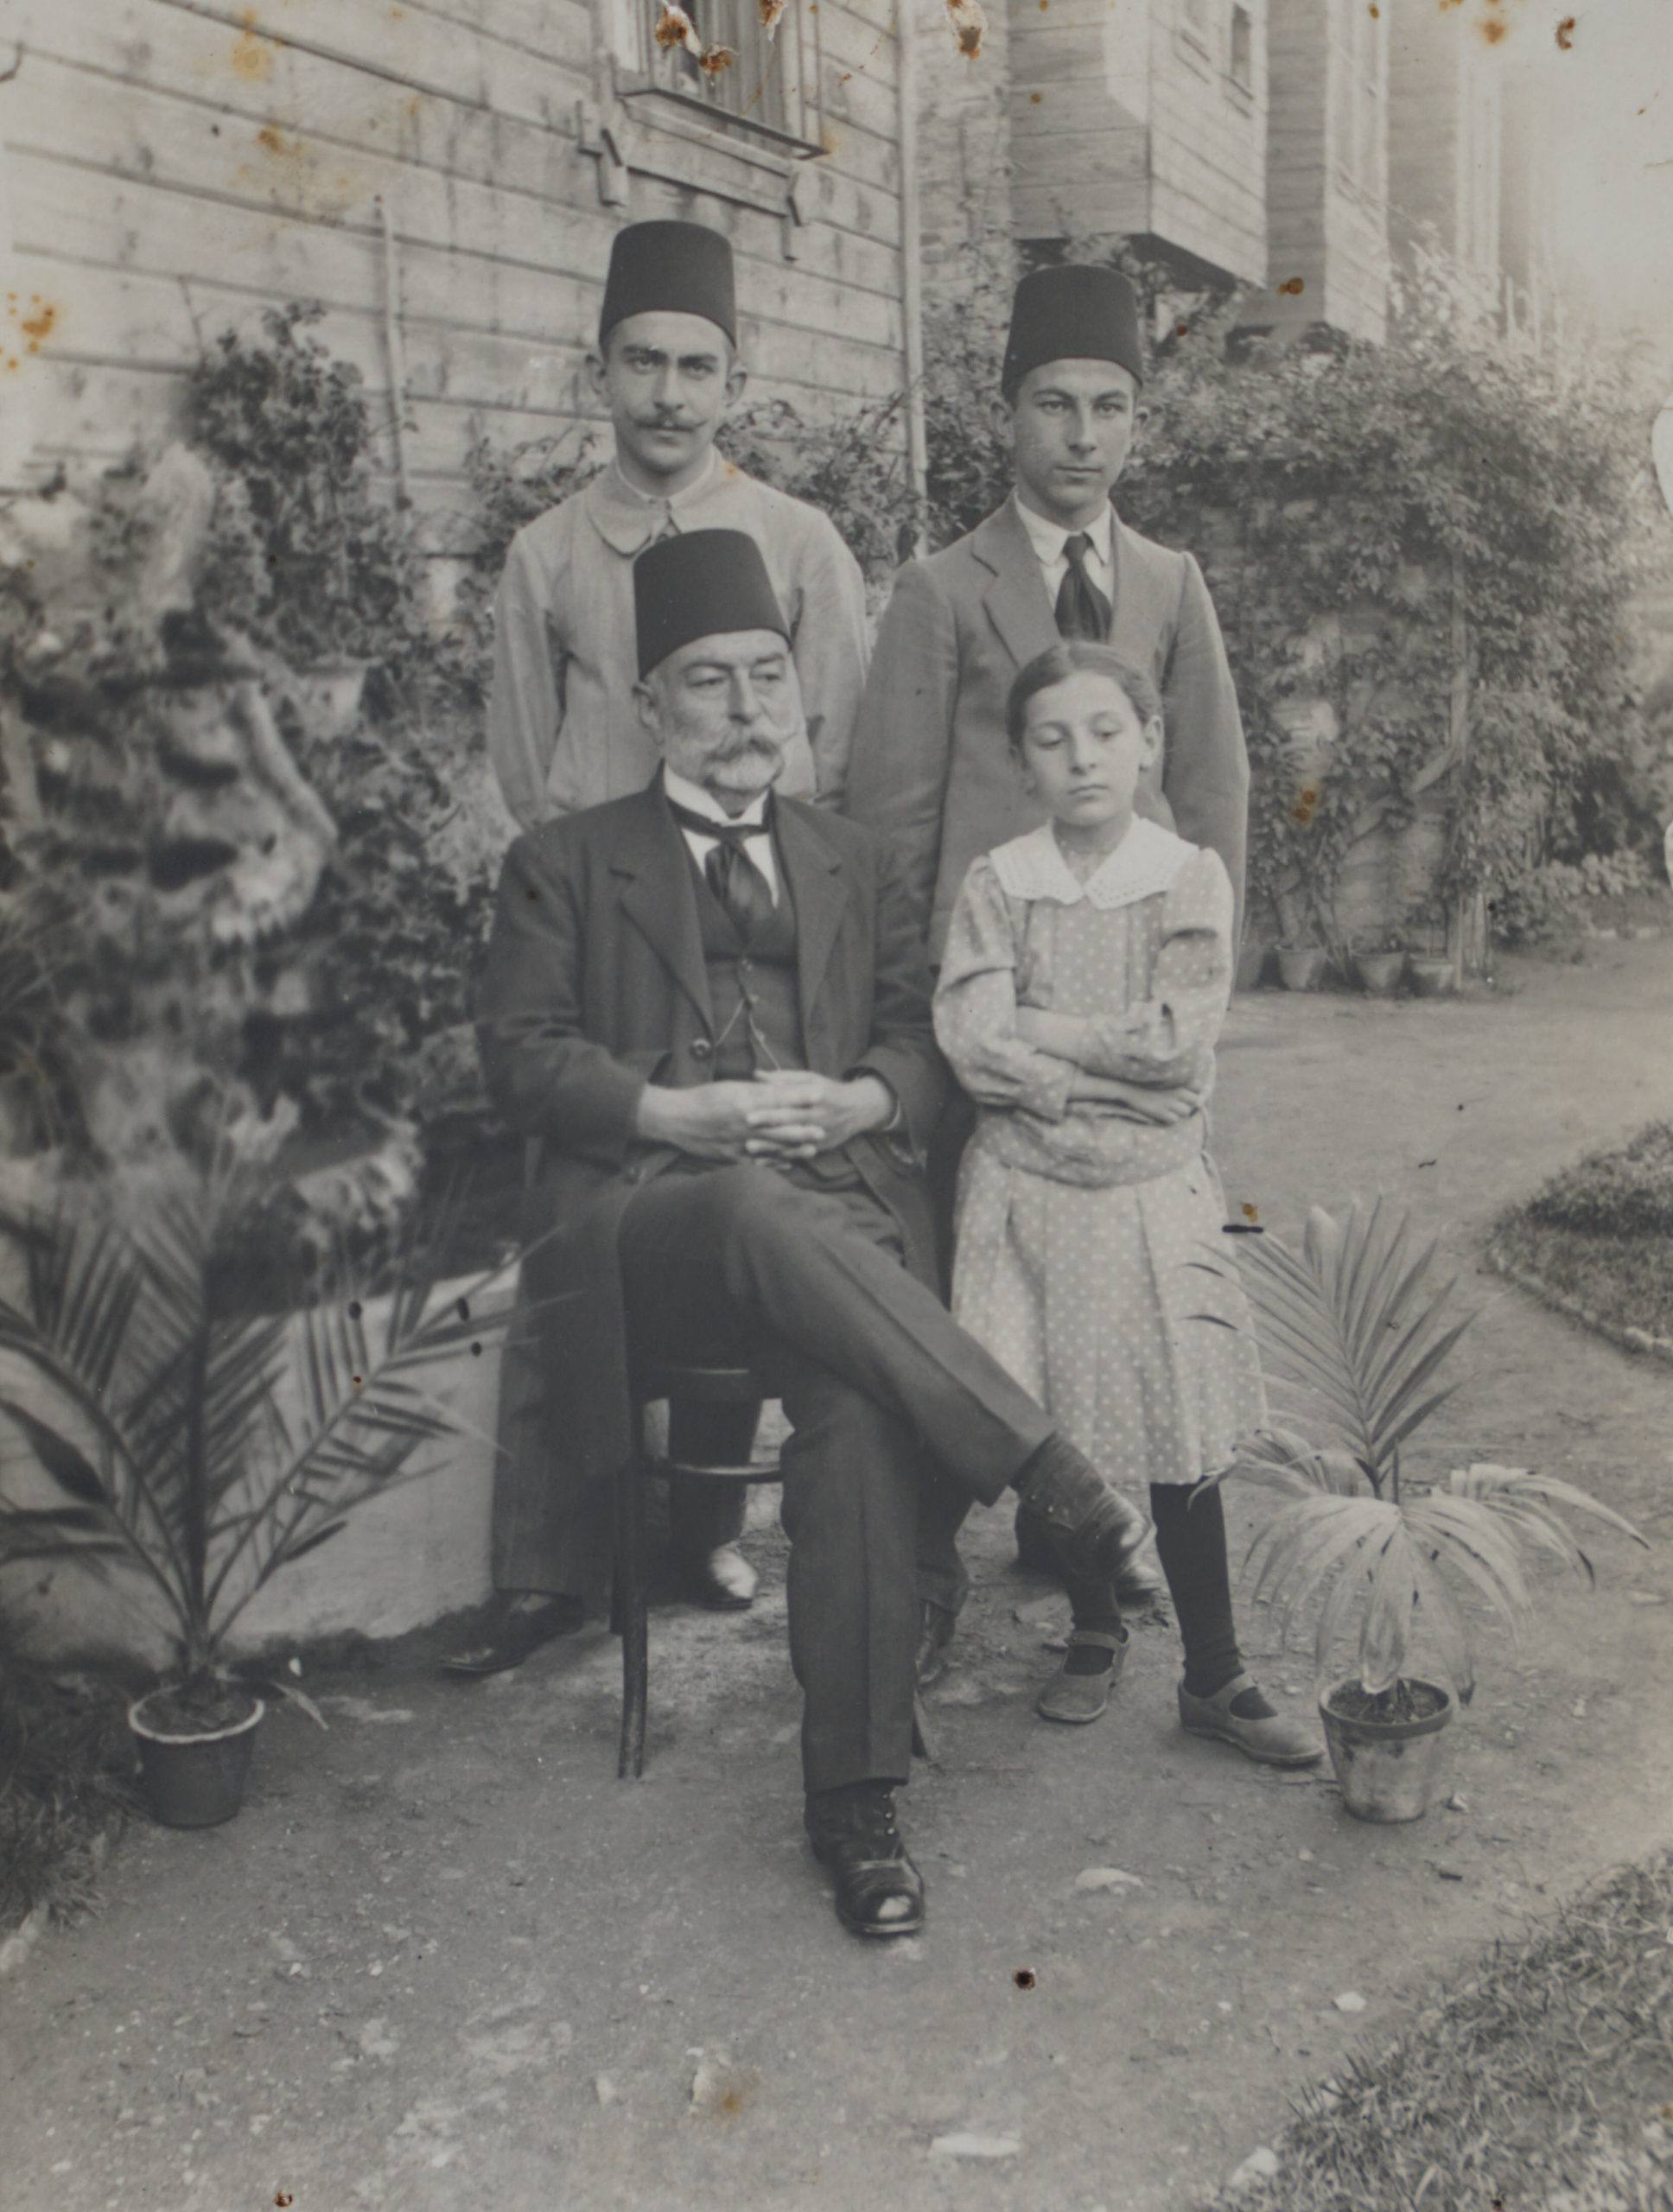 Burhan Felek, Üsküdar İhsaniye Mahallesi’ndeki evinin bahçesinde Babasi Mahmut Ziyaeddin, kardeşleri Hüdai ve Sabahat ile birlikte…